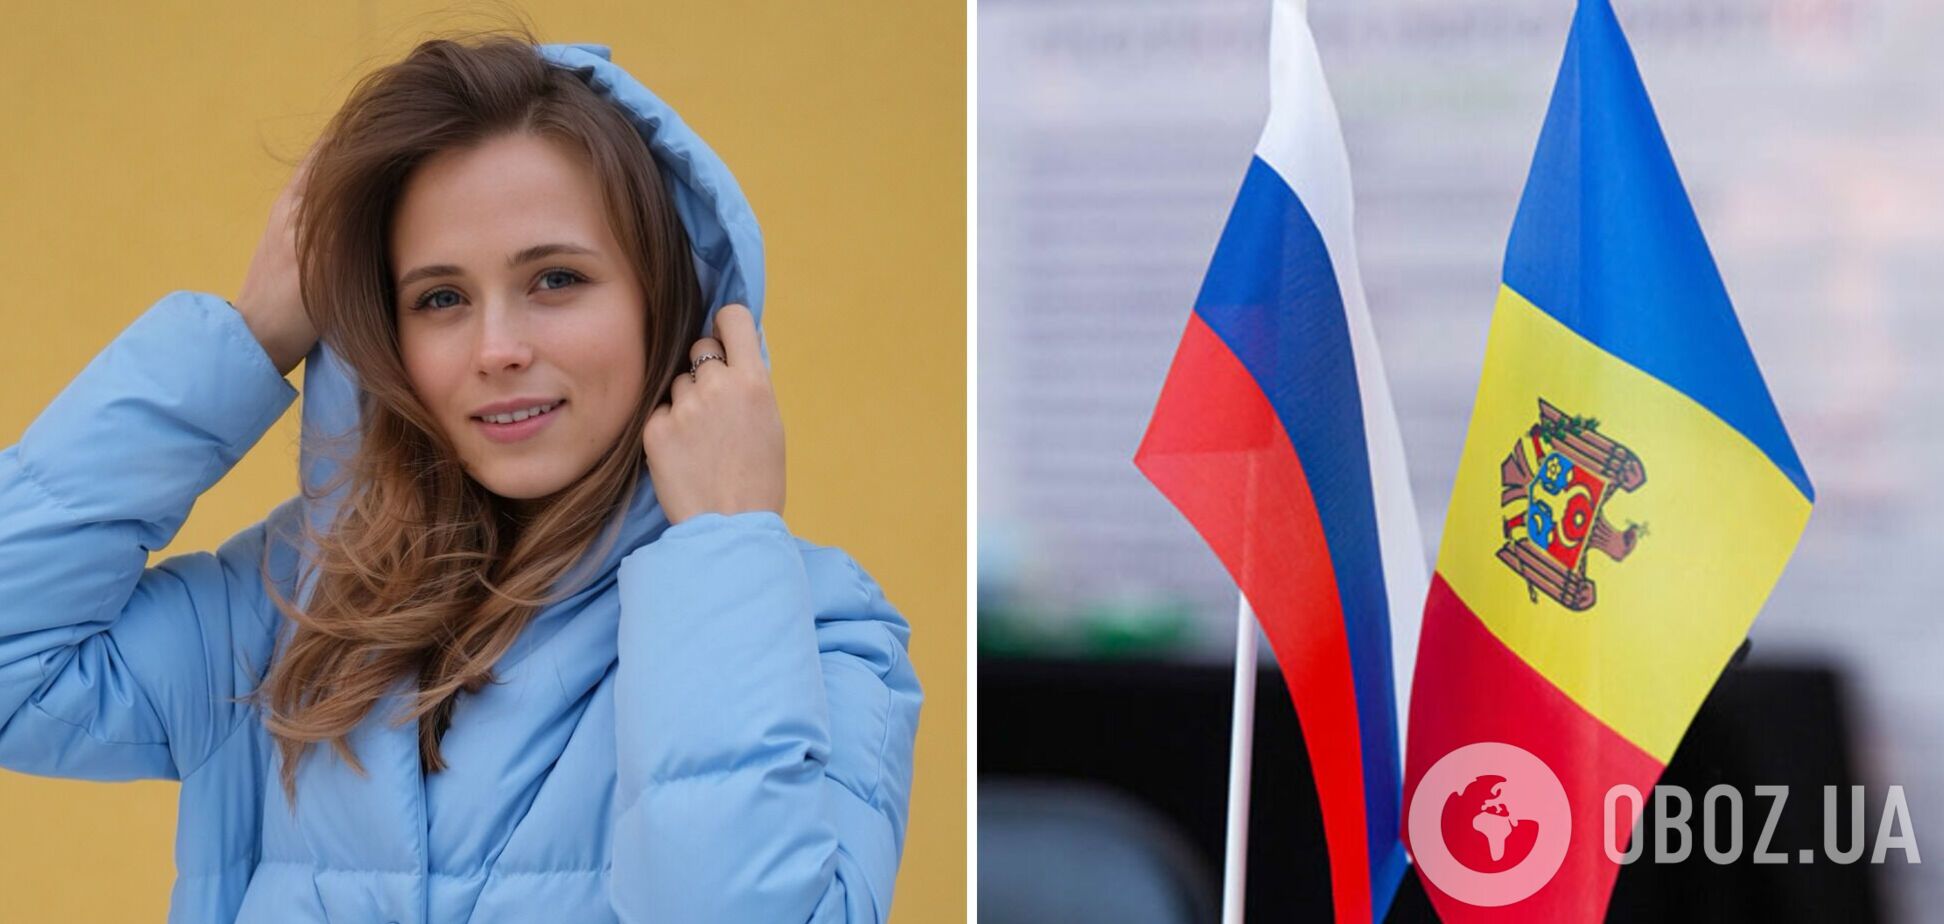 Звезда 'Сватов' Анна Кошмал пожаловалась на насмешки в Молдове из-за ее украинского языка: люди радовались, что 'части Украины уже нет'